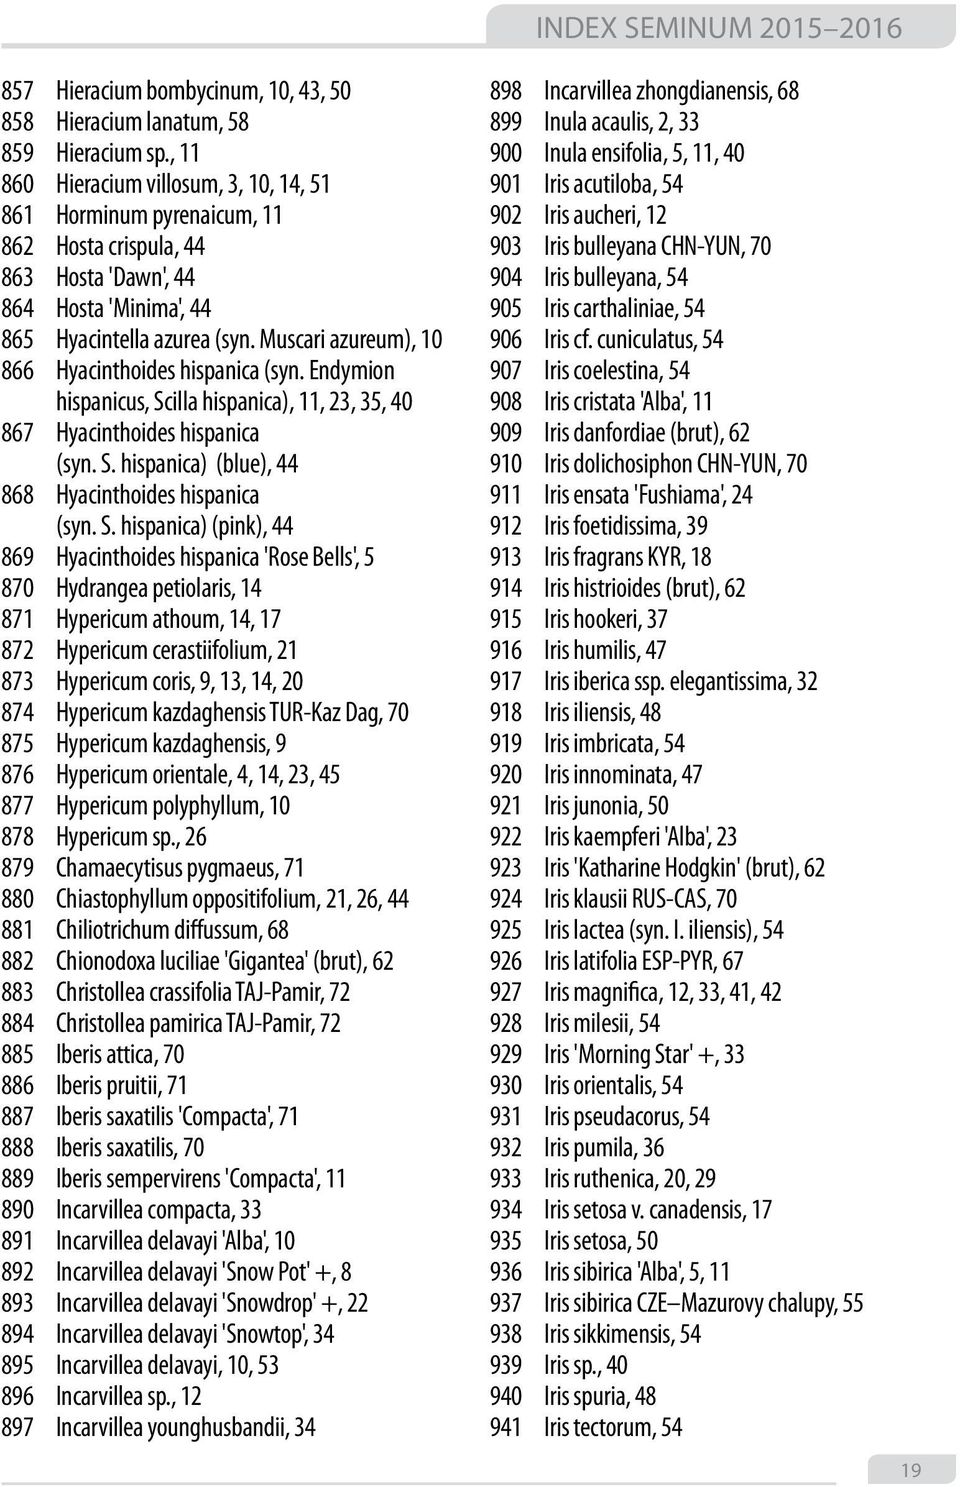 Muscari azureum), 10 866 Hyacinthoides hispanica (syn. Endymion hispanicus, Scilla hispanica), 11, 23, 35, 40 867 Hyacinthoides hispanica (syn. S. hispanica) (blue), 44 868 Hyacinthoides hispanica (syn.